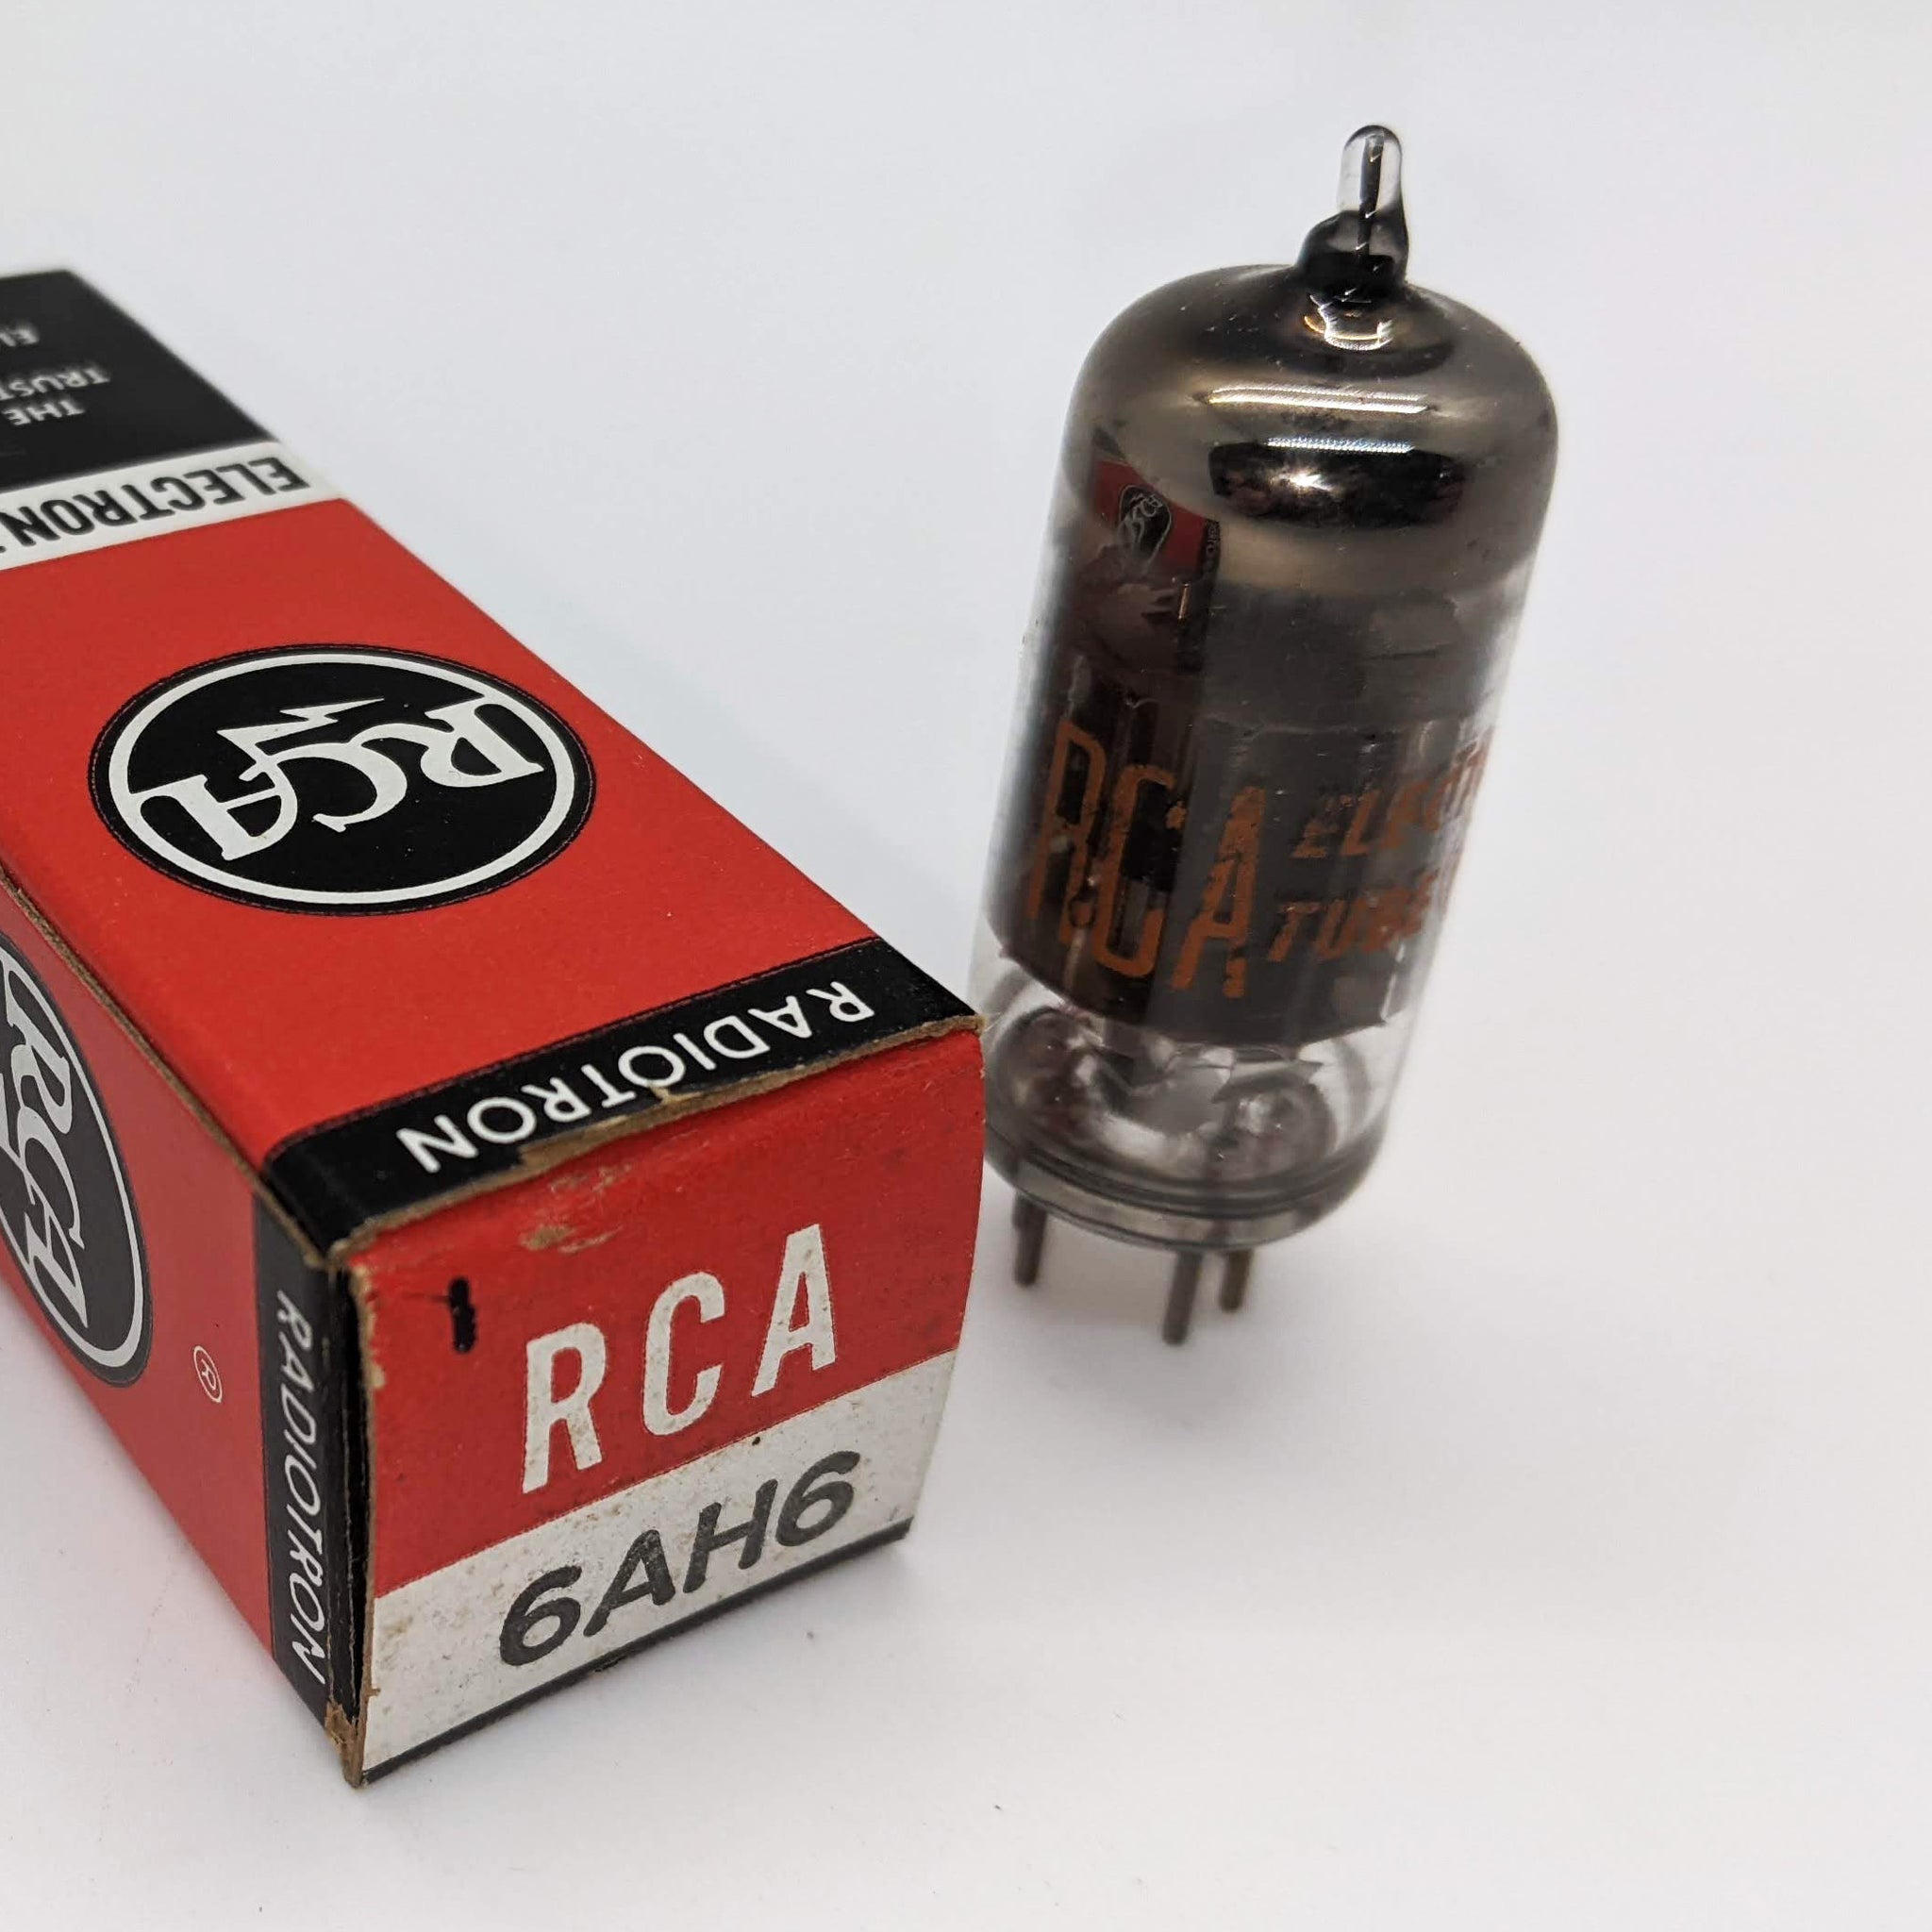 New RCA 6AH6 Tube, 1968, Hickok Tested Good